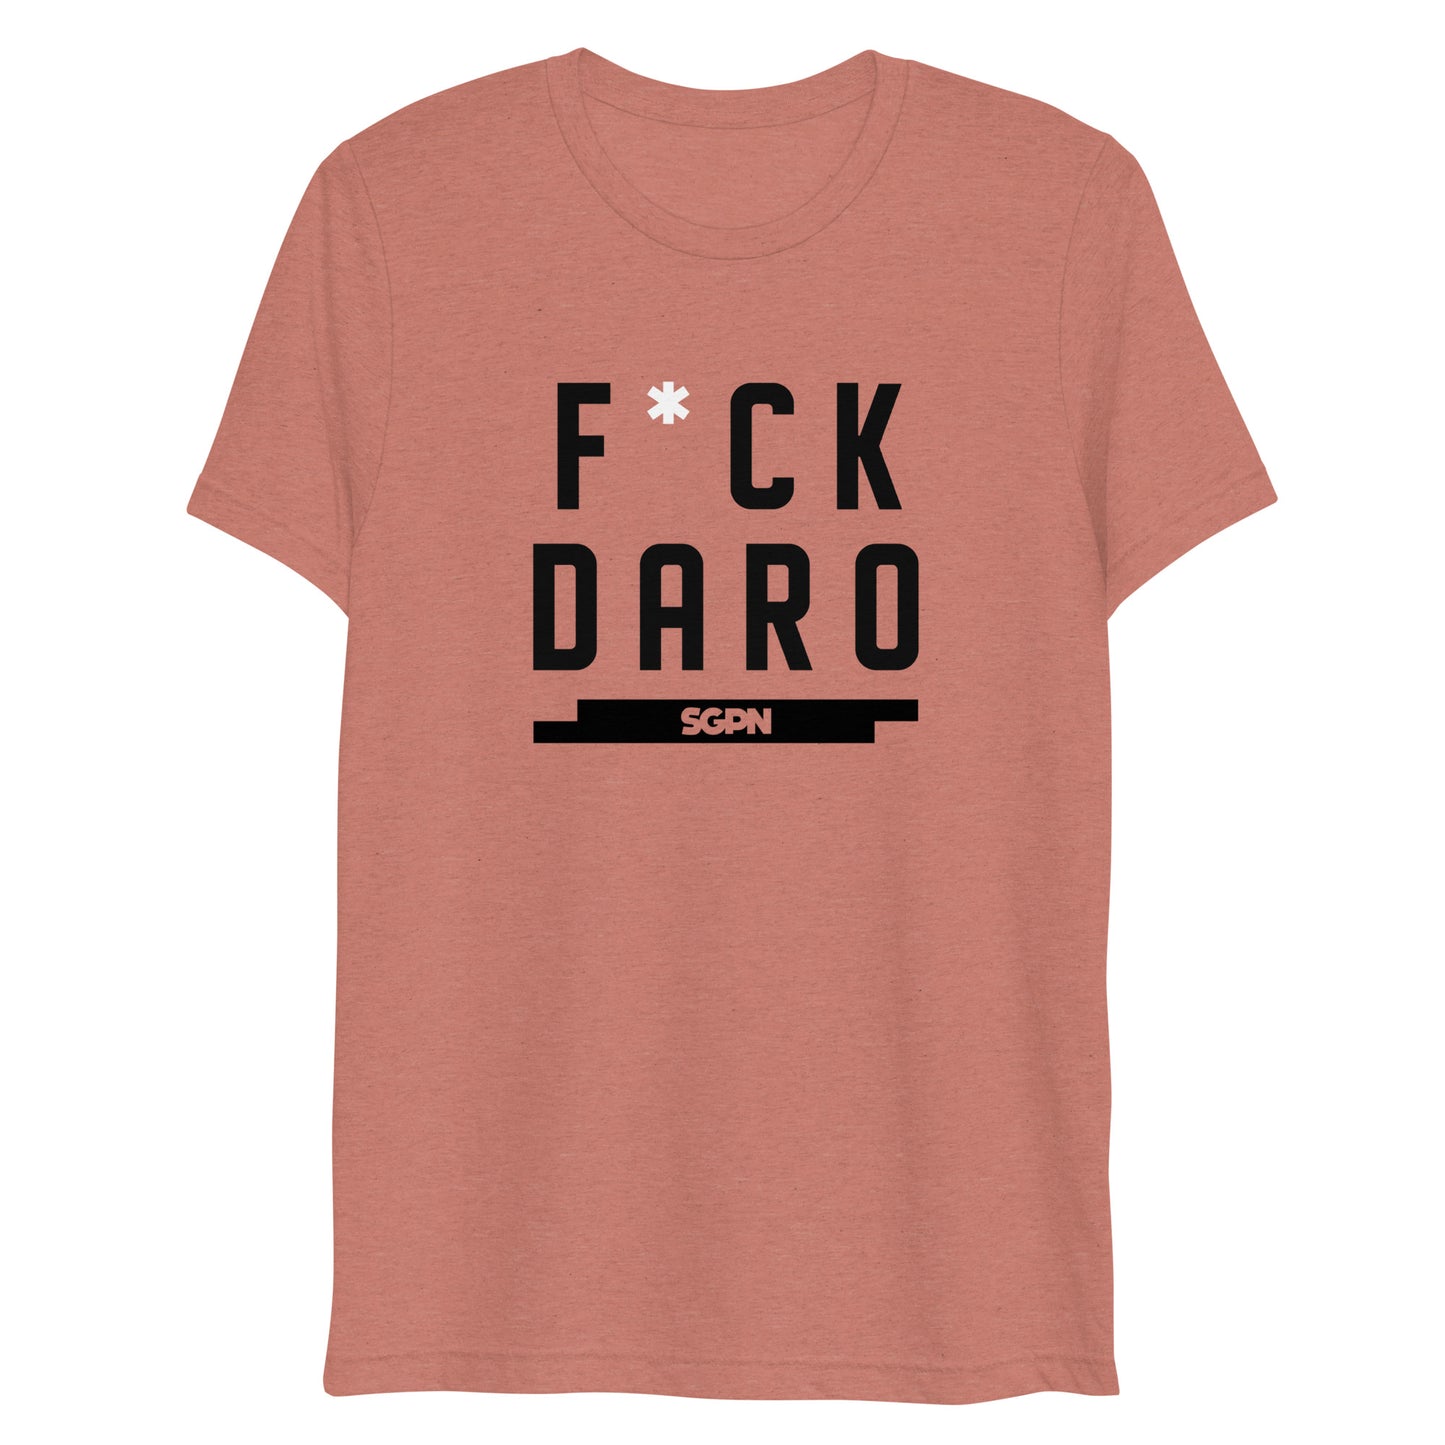 F*ck Daro - SGPN - short sleeve t-shirt